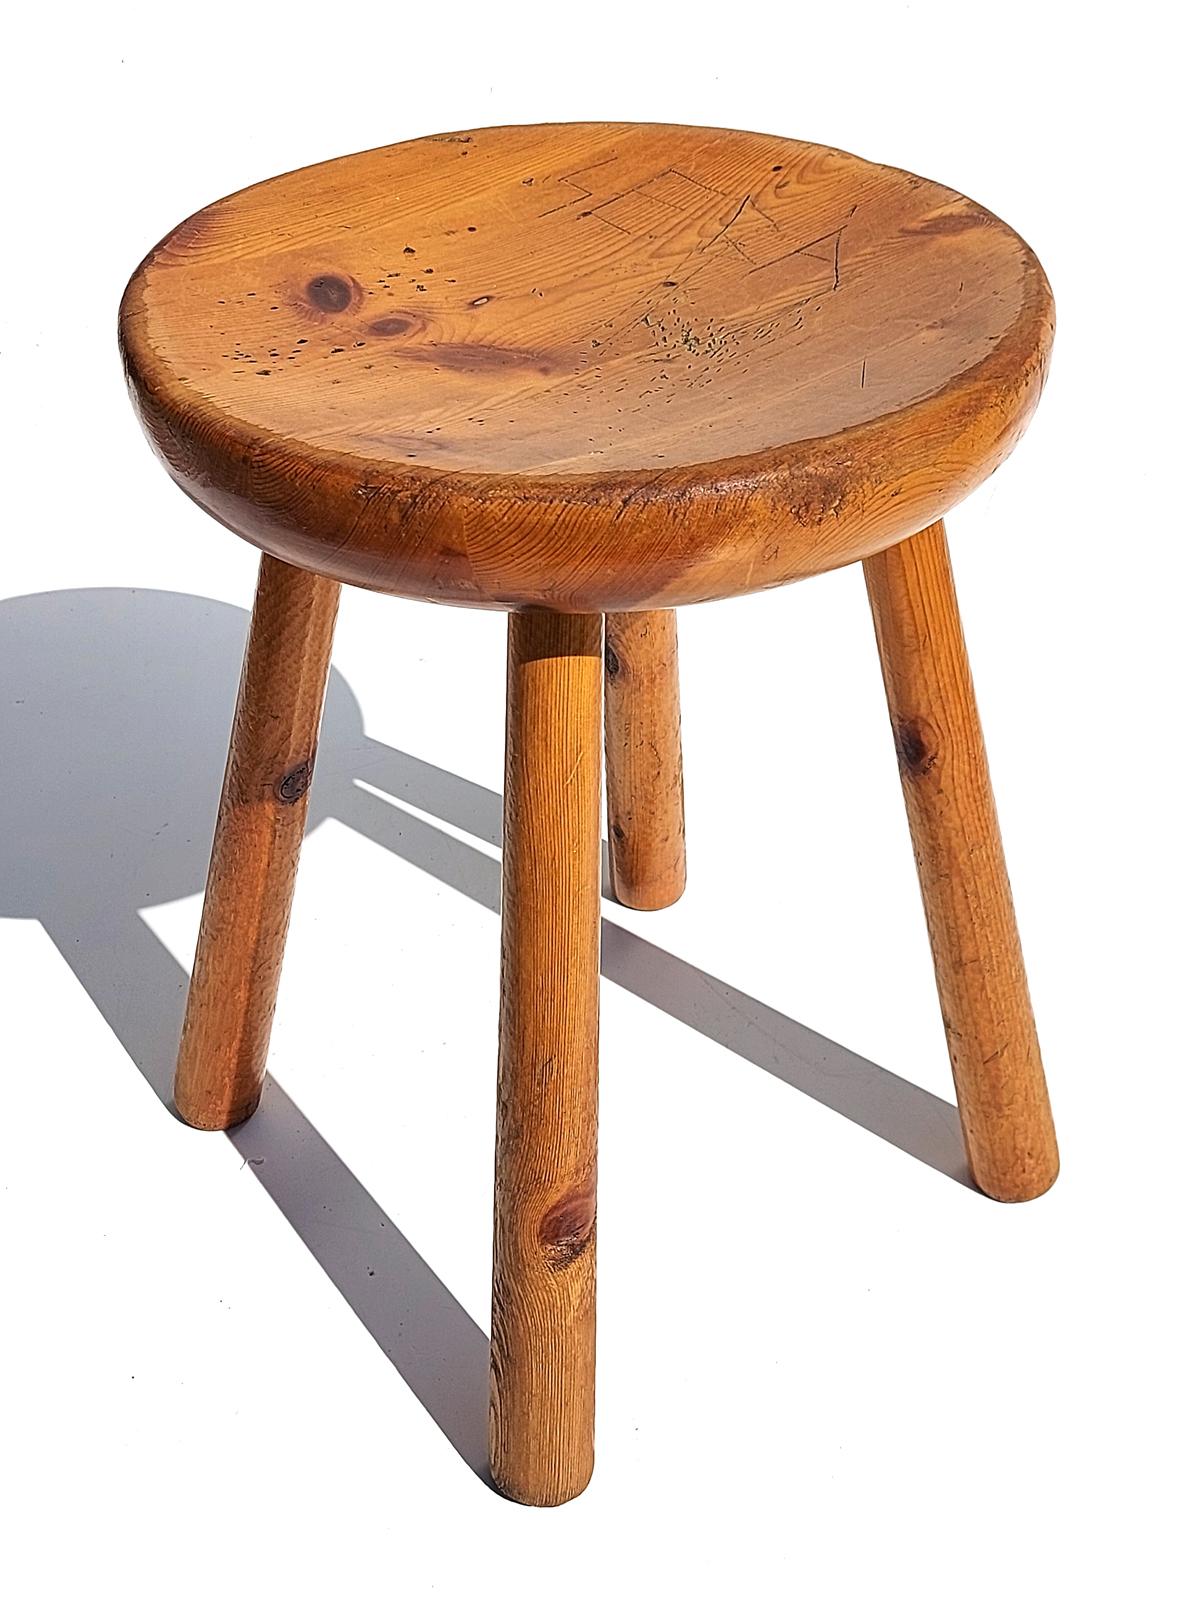 Hocker aus Kiefernholz
Original 1960er Jahre
Durchmesser des Sitzes: 53 cm.
Der Stil von Charlotte Perriand 